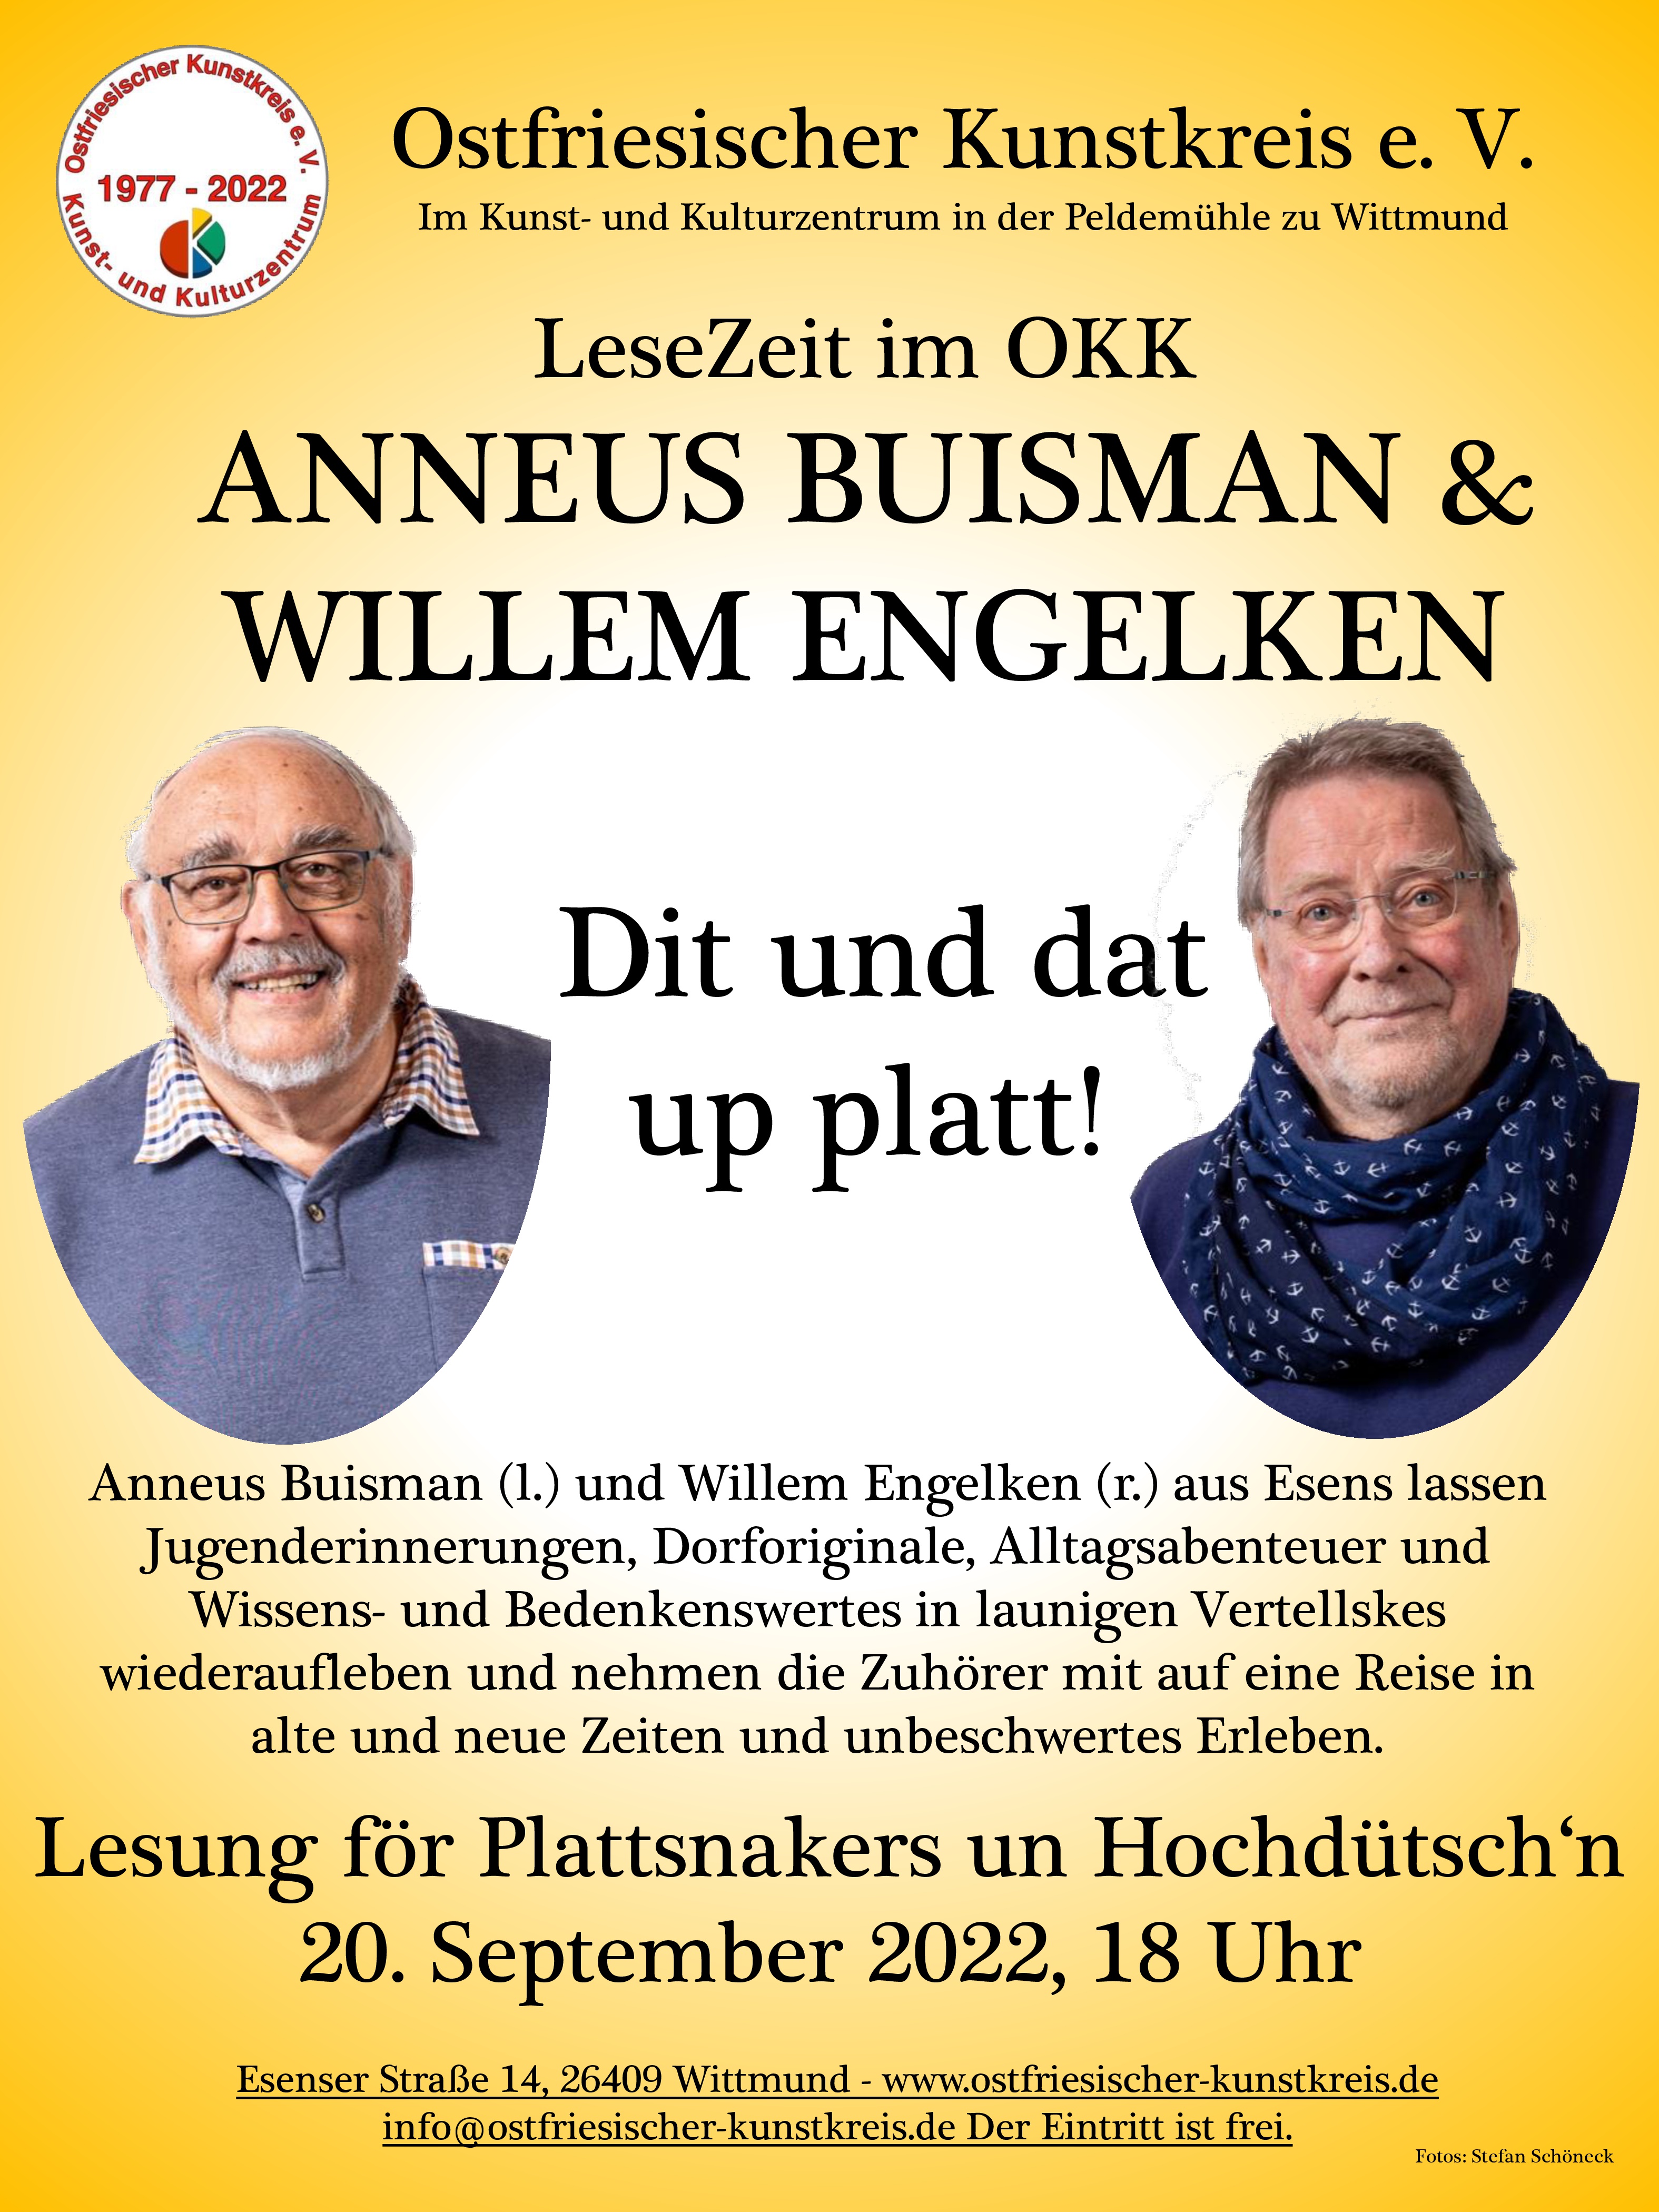 2. Lesezeit im OKK - A. Buisman & W. Engelken